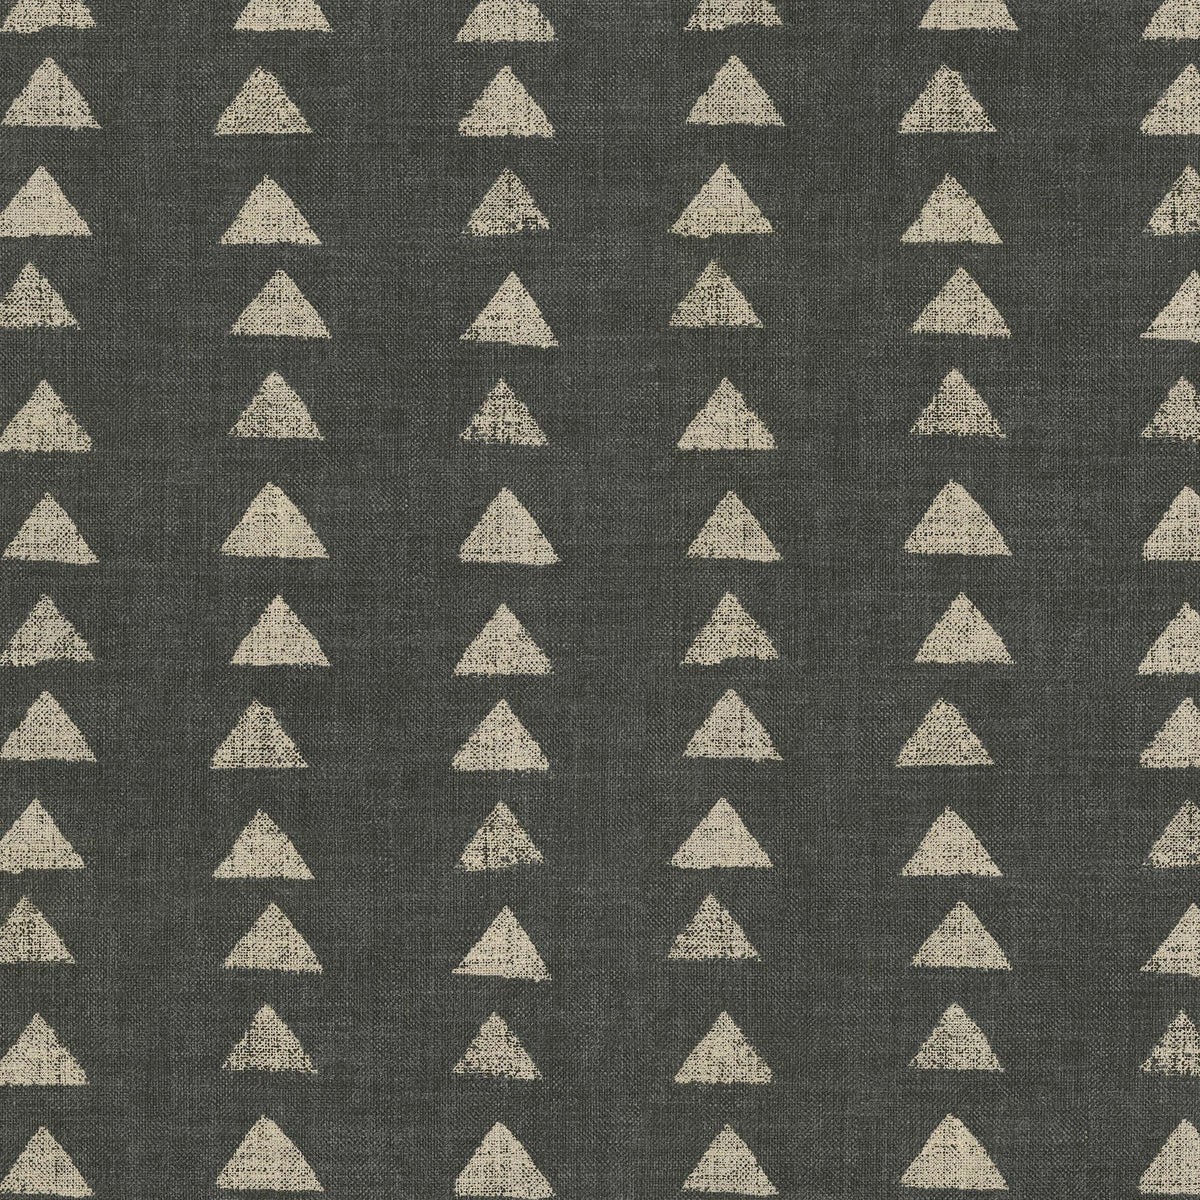 P/K Lifestyles Nomadic Triangle - Ebony 408454 Upholstery Fabric